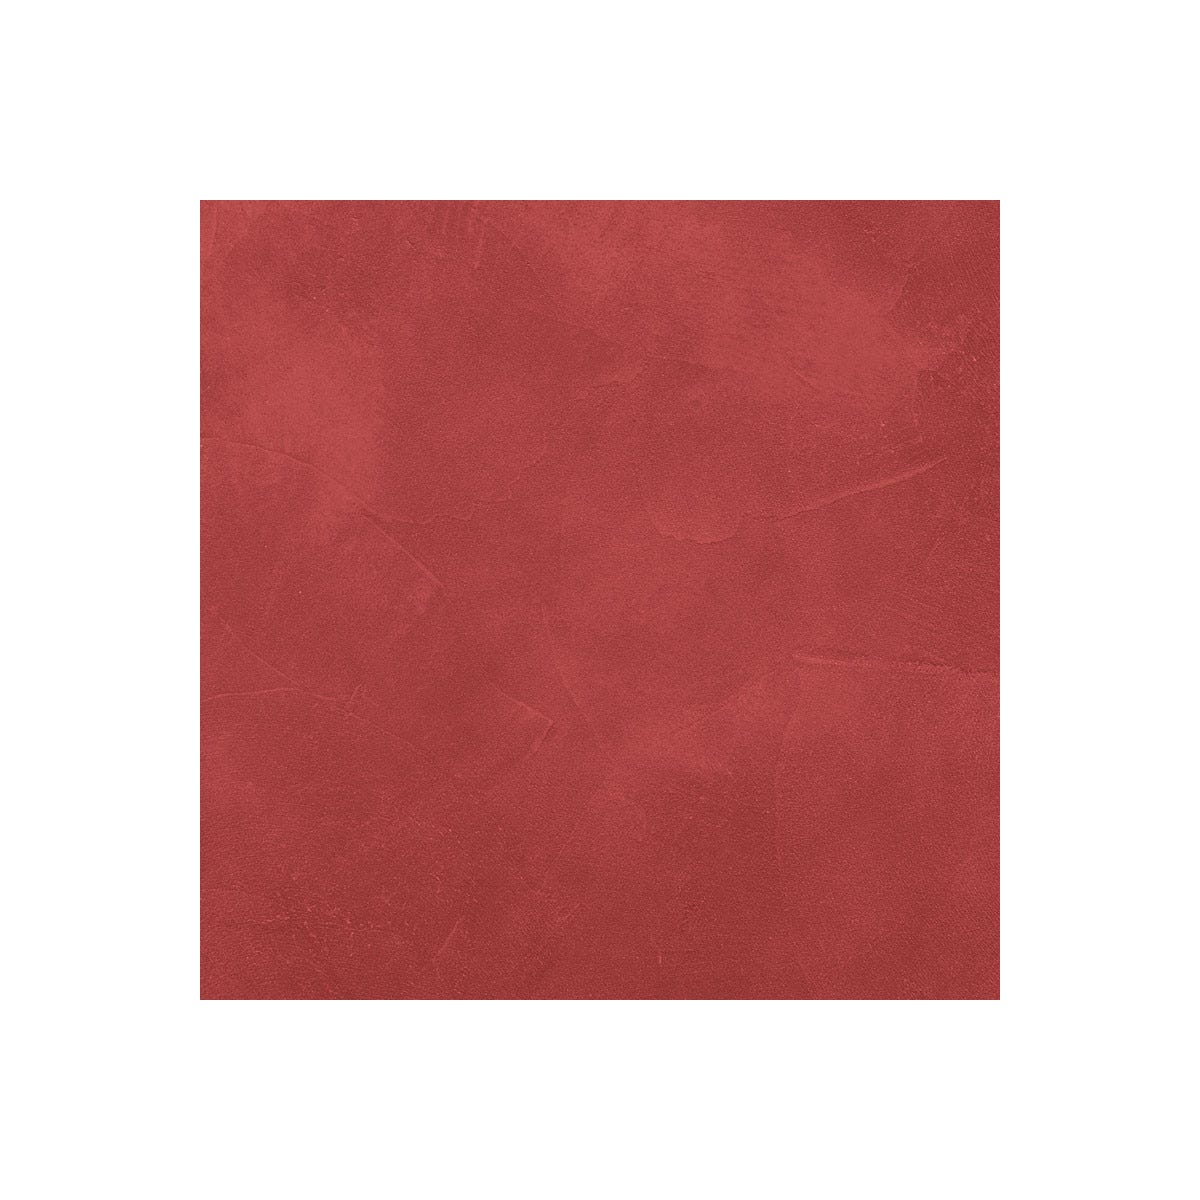 KIT BÉTON CIRÉ - MURS SALLE DE BAINS DOUCHE ITALIENNE Goyave Rouge - 10 m² (en 2 couches)ARCANE INDUSTRIES 6